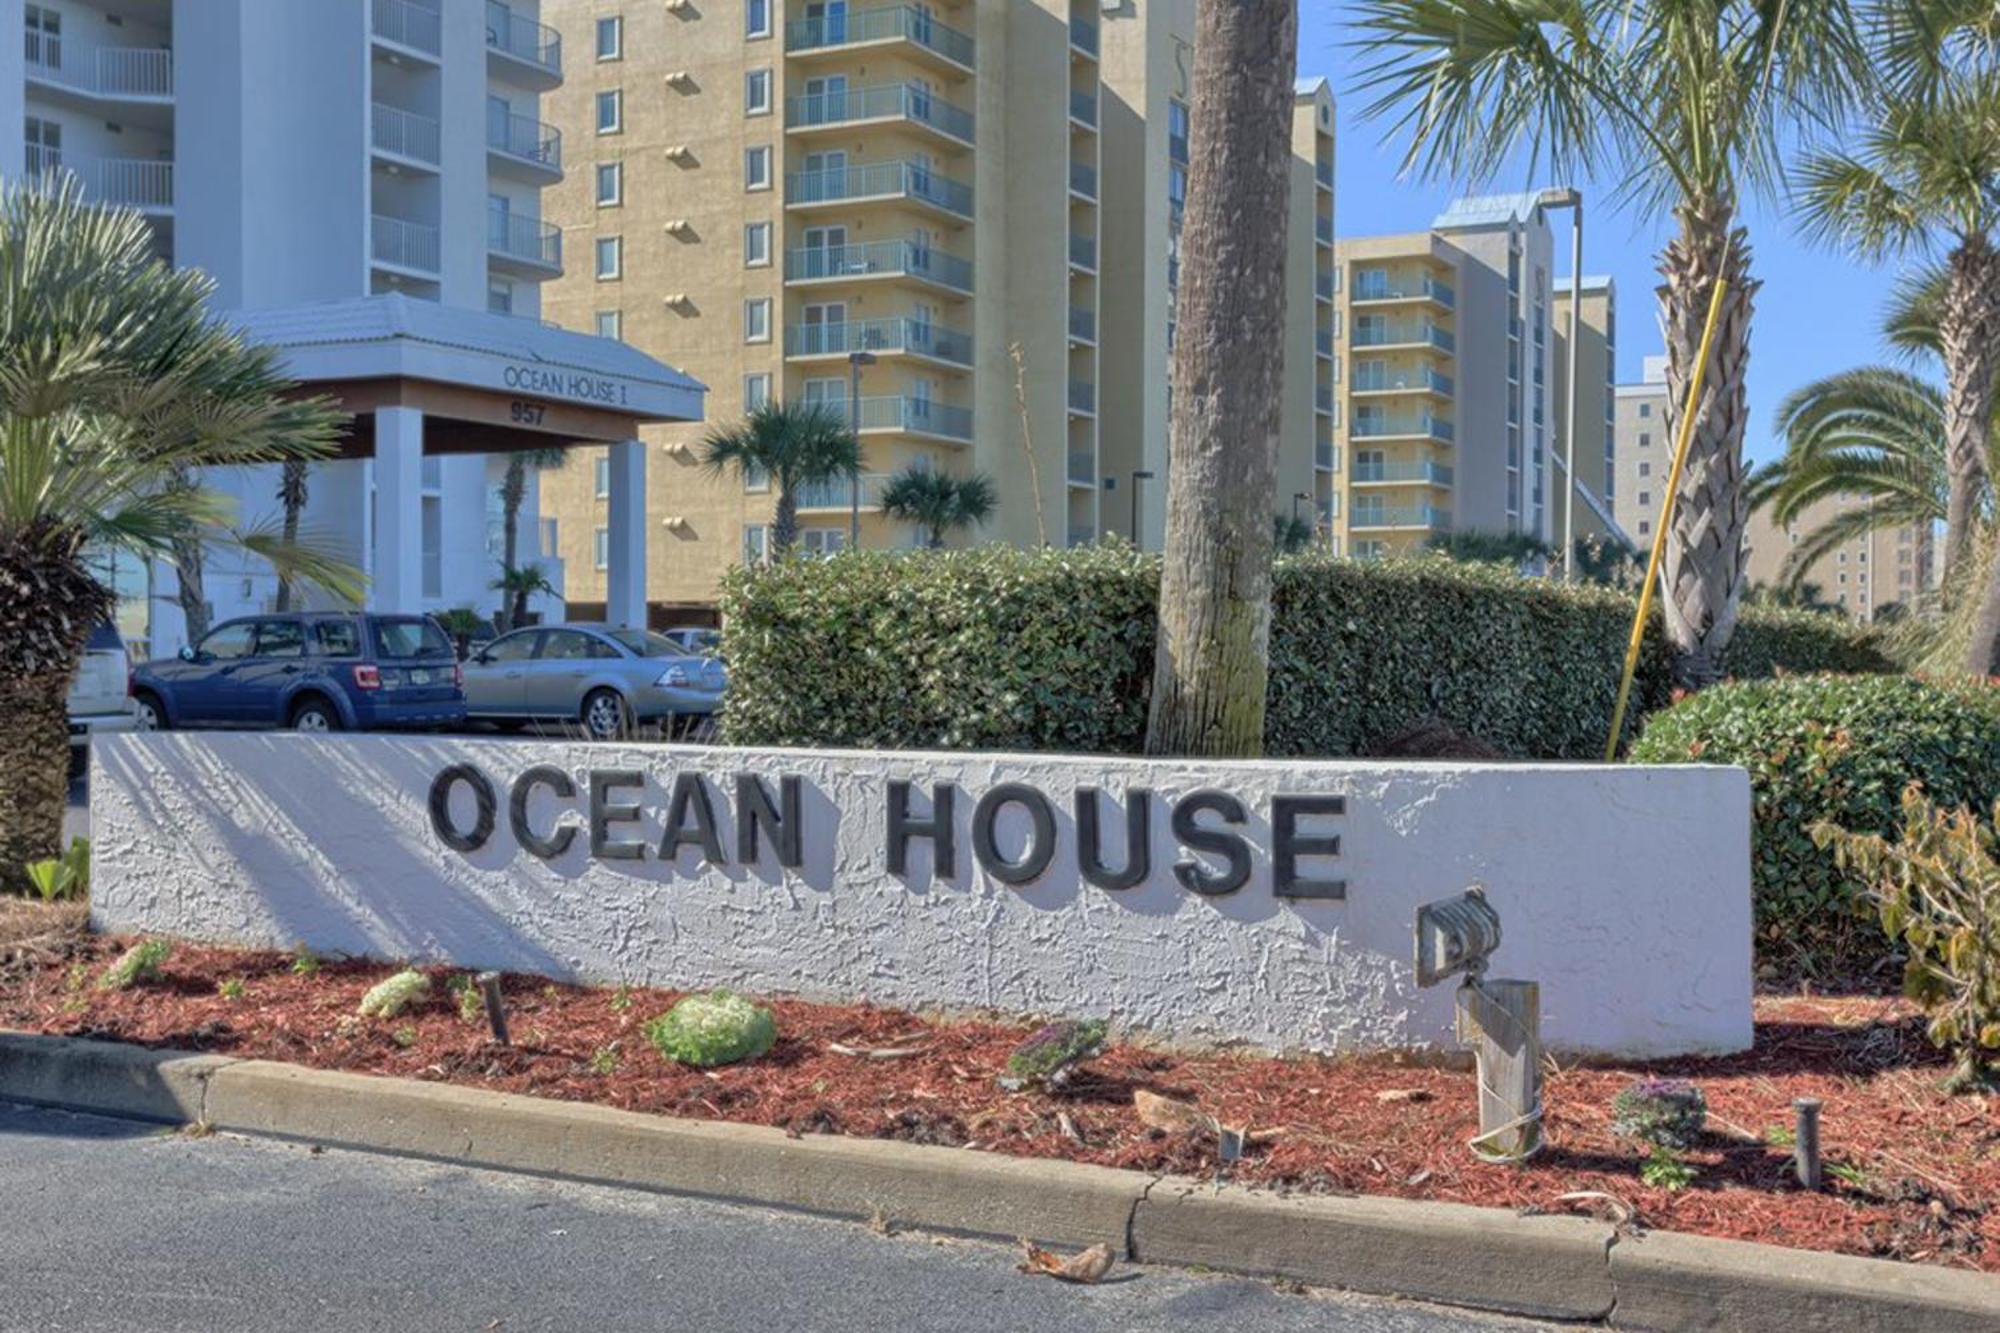 Villa Ocean House #1502 - Sea La Vie à Gulf Shores Chambre photo